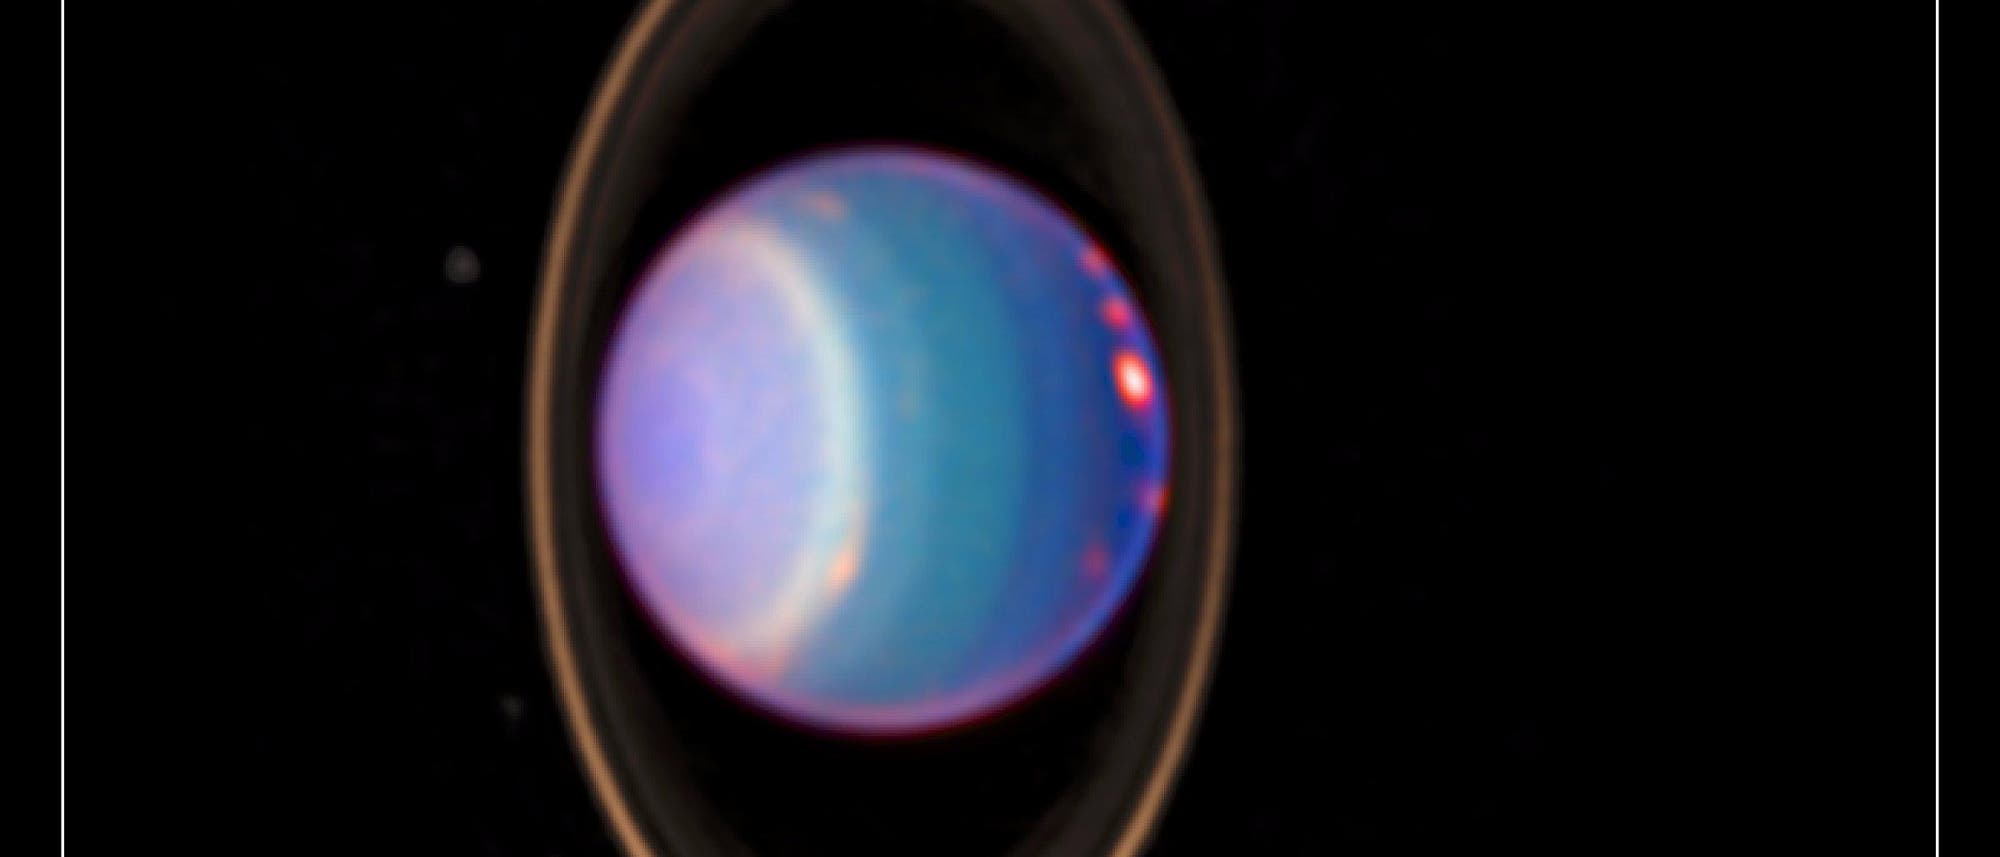 Infrarotaufnahme von Uranus und seinen Atmosphärenstrukturen